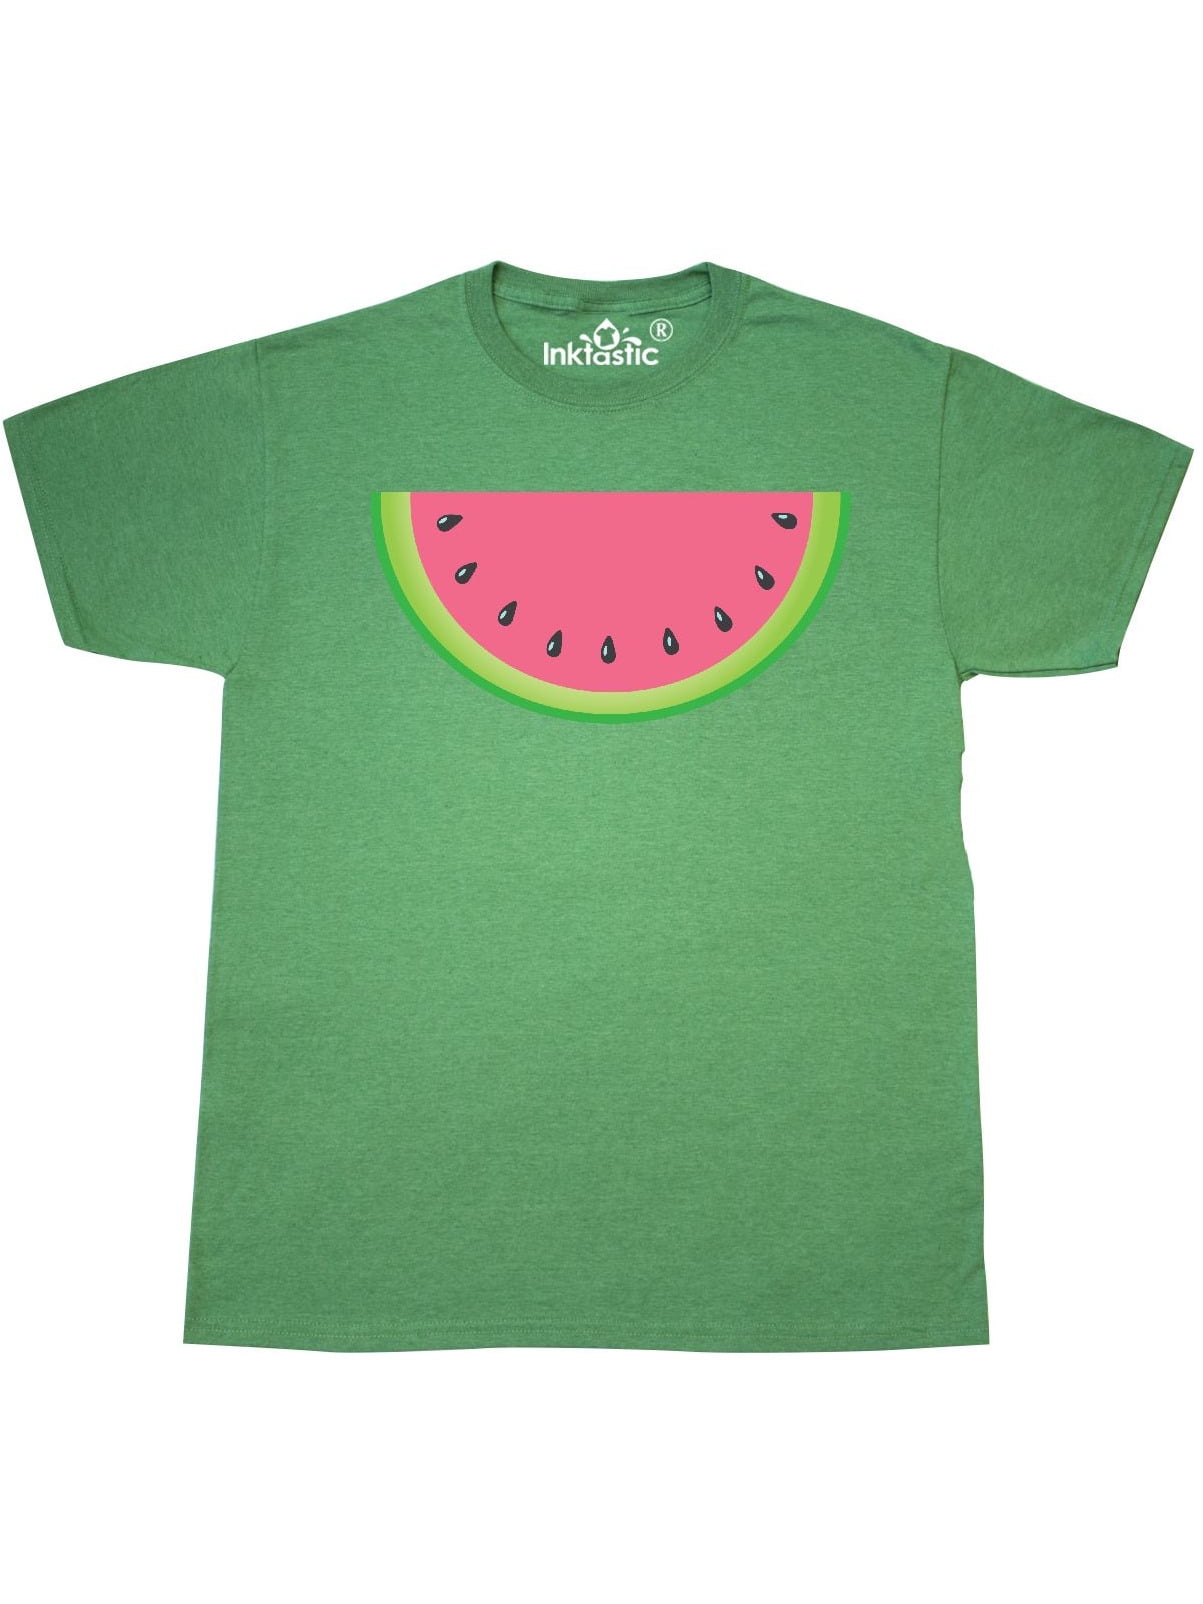 INKtastic - Watermelon Slice T-Shirt - Walmart.com